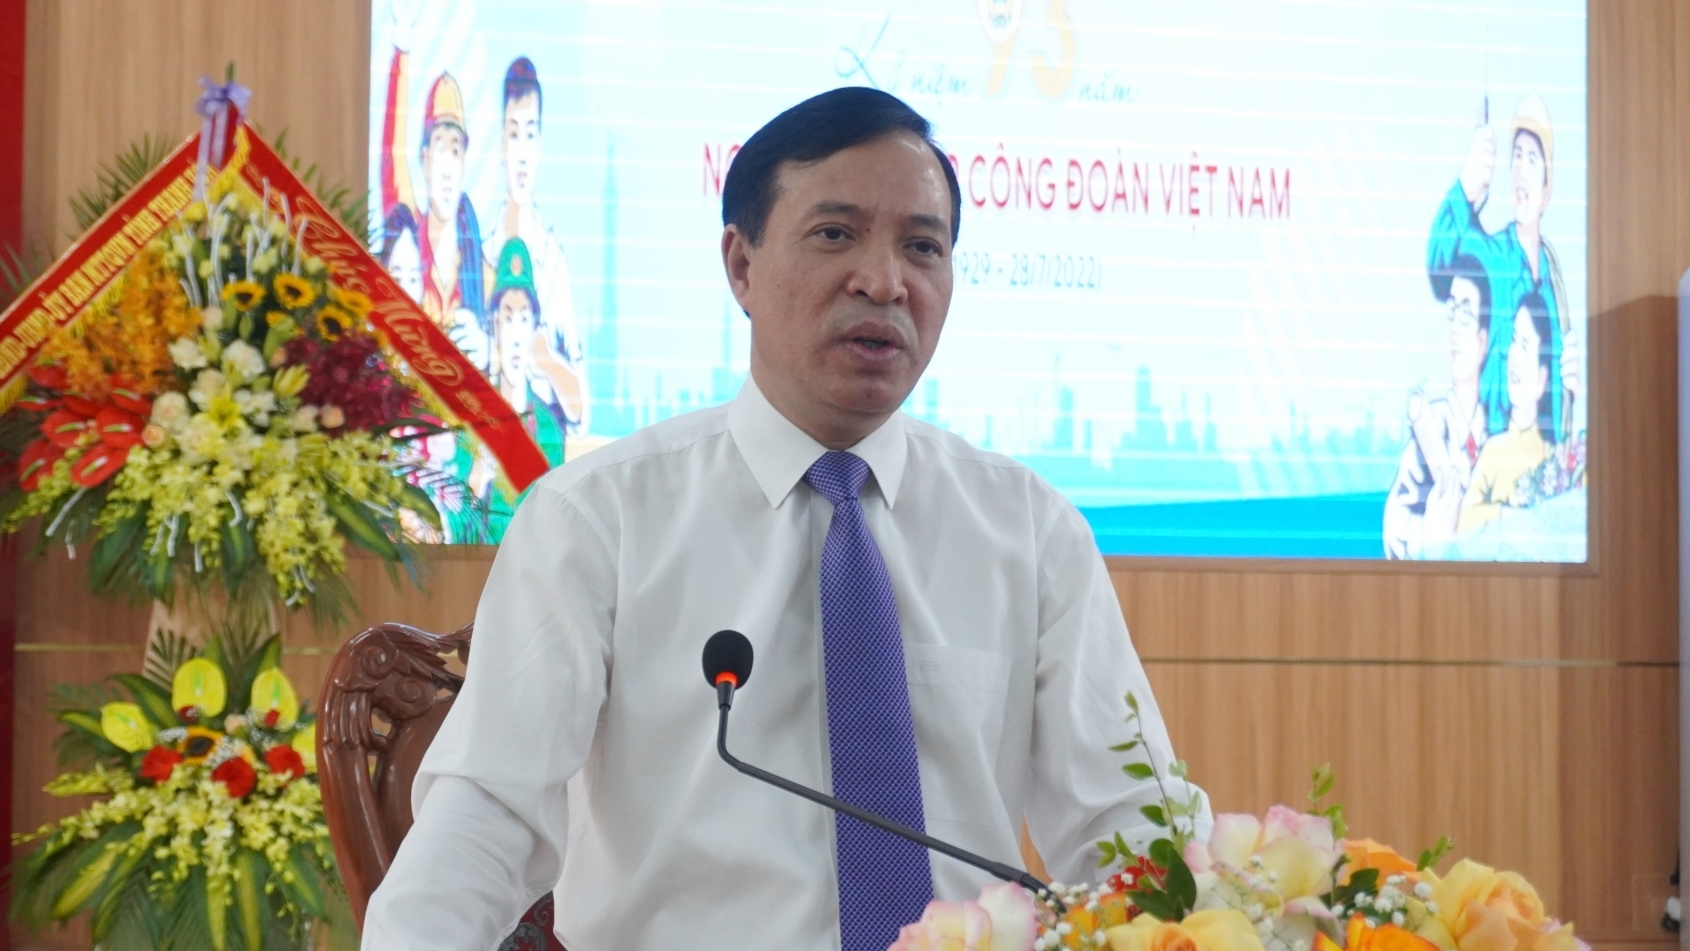 Tỉnh ủy đánh giá cao hoạt động của Công đoàn Thanh Hoá